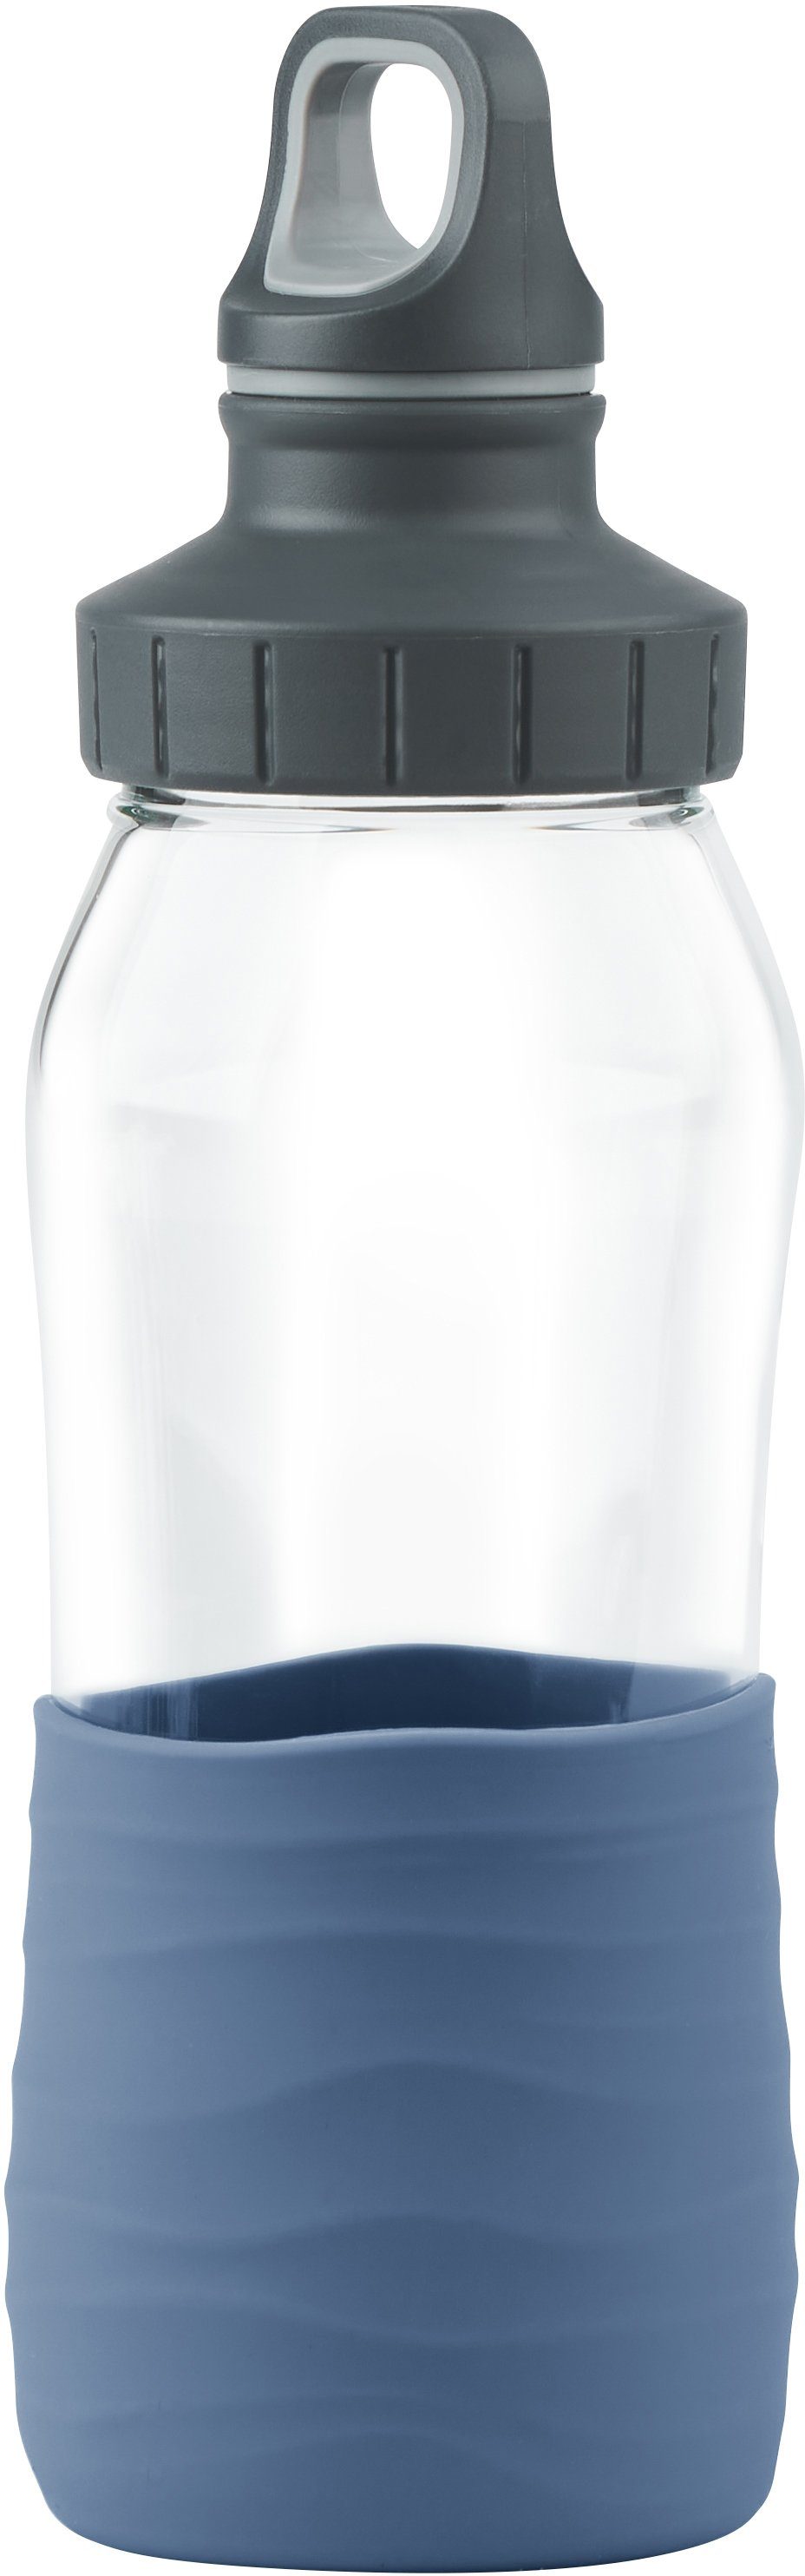 Drink2Go, ml Schraubverschluss, dicht/hygienisch/rein, Emsa Trinkflasche Blau Aqua 500 Silikonmanschette,